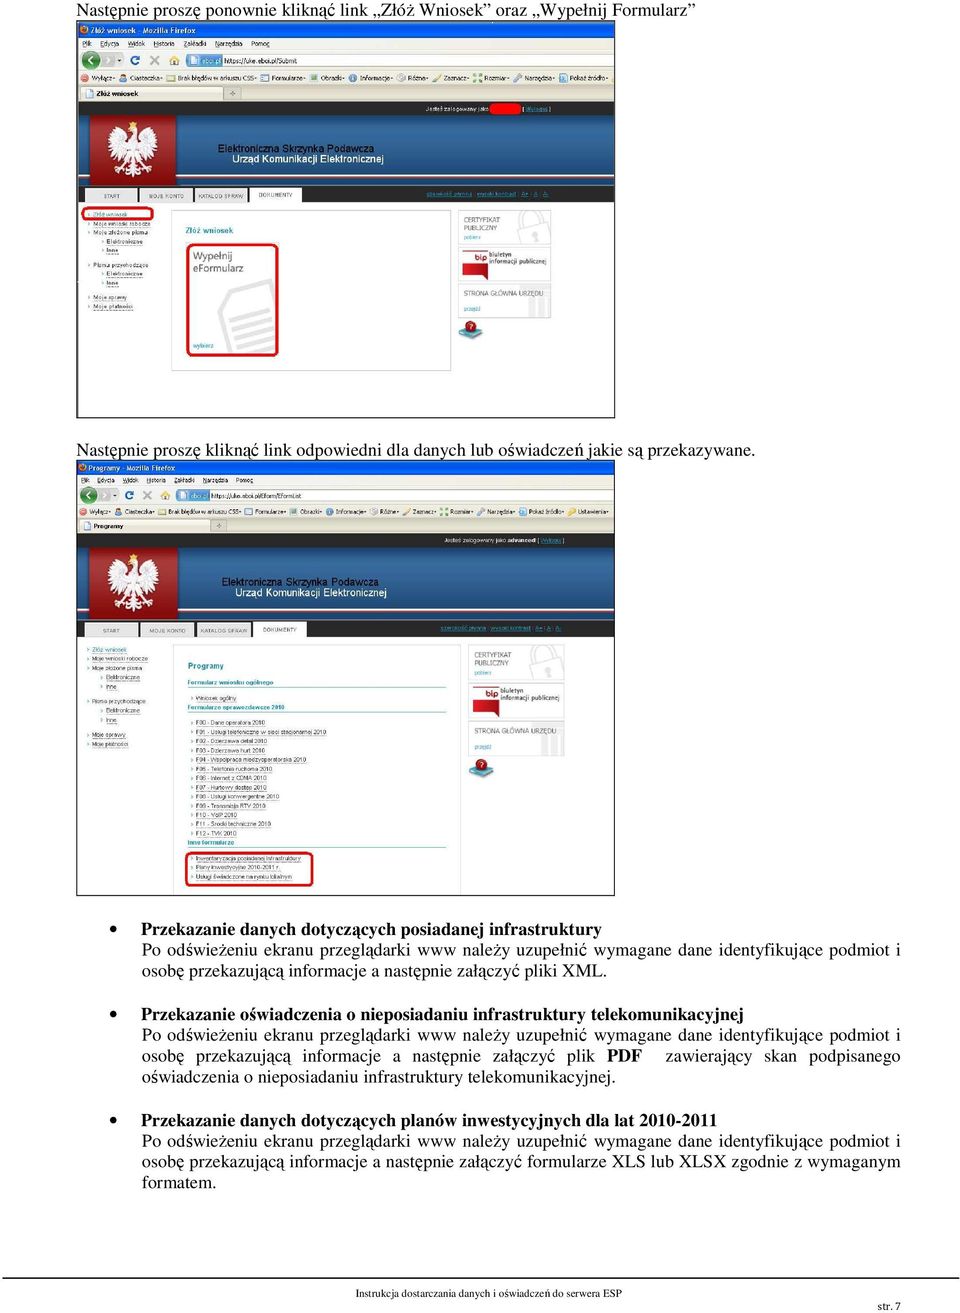 Przekazanie oświadczenia o nieposiadaniu infrastruktury telekomunikacyjnej osobę przekazującą informacje a następnie załączyć plik PDF zawierający skan podpisanego